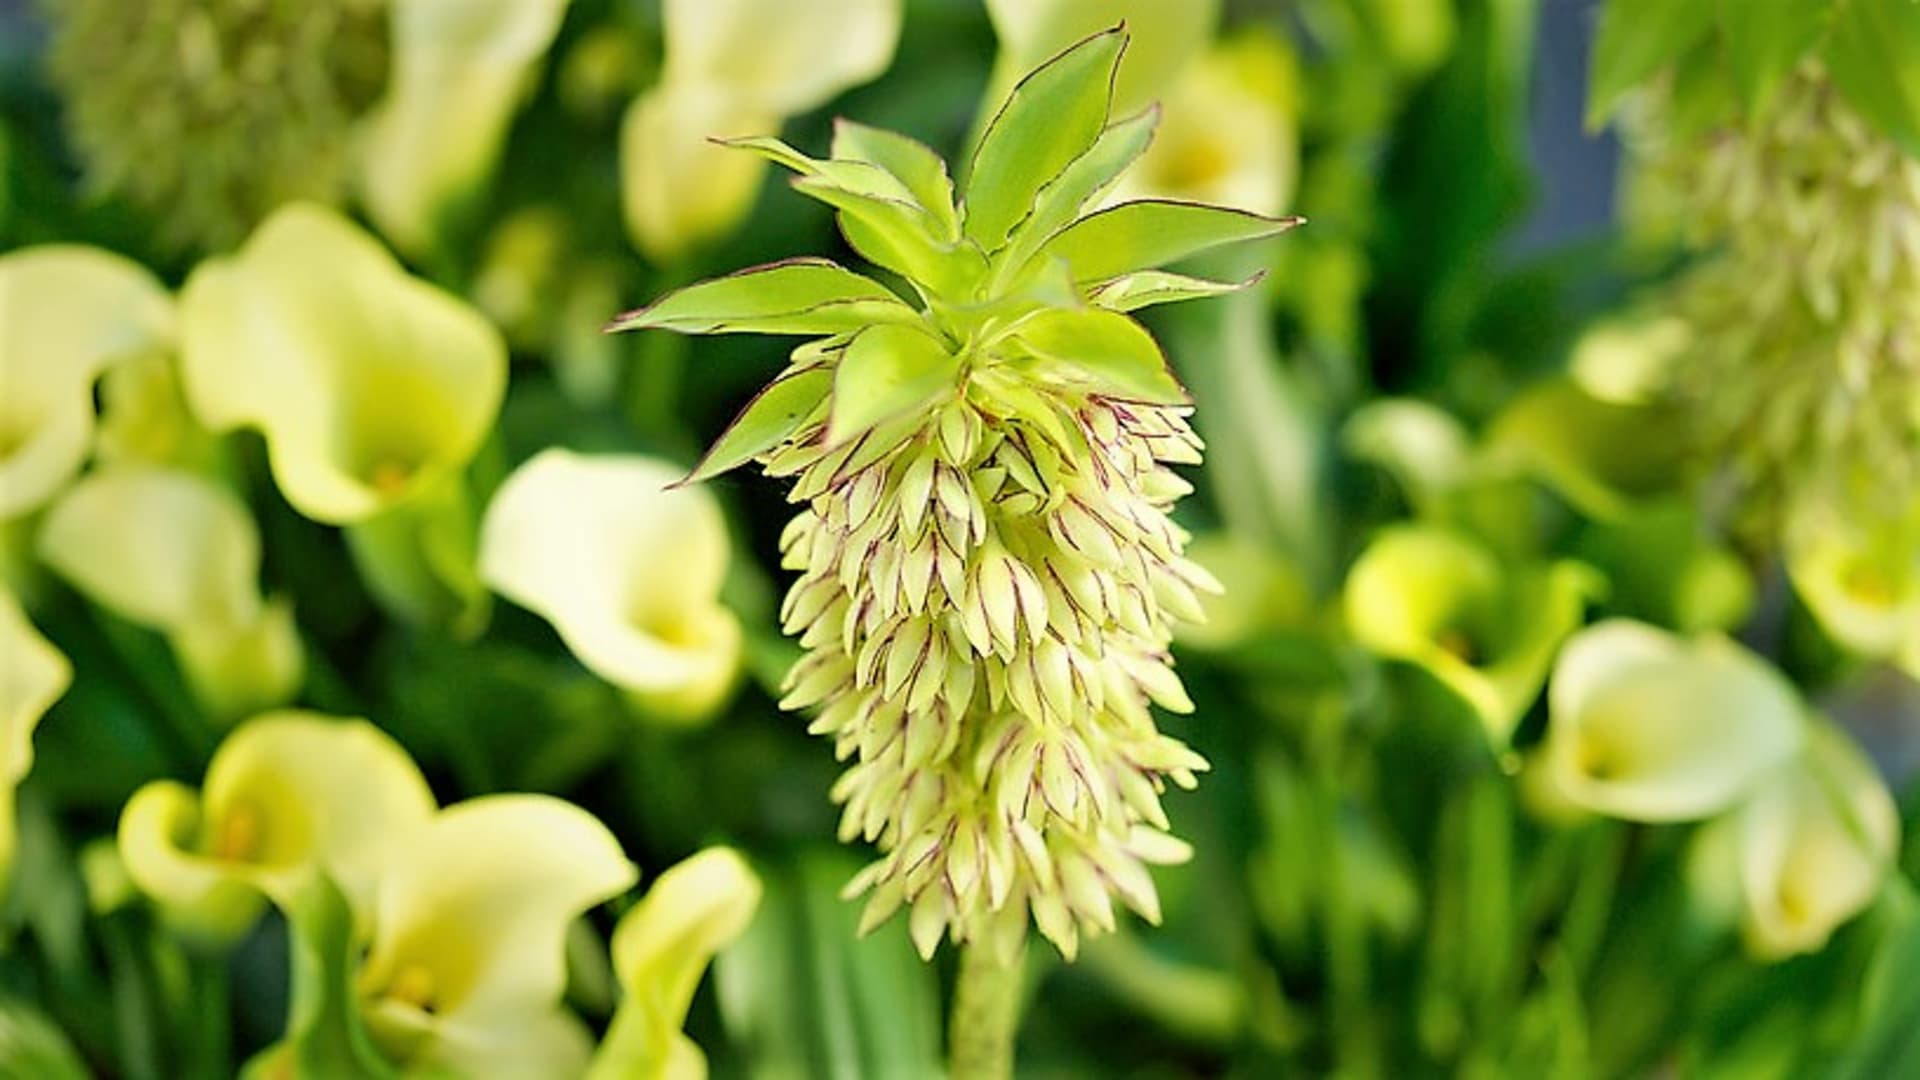 Druhy chocholatice: Eucomis bicolor má bíle až krémově zelenožluté květy s lila lemem a purpurově tečkované květní stvoly.